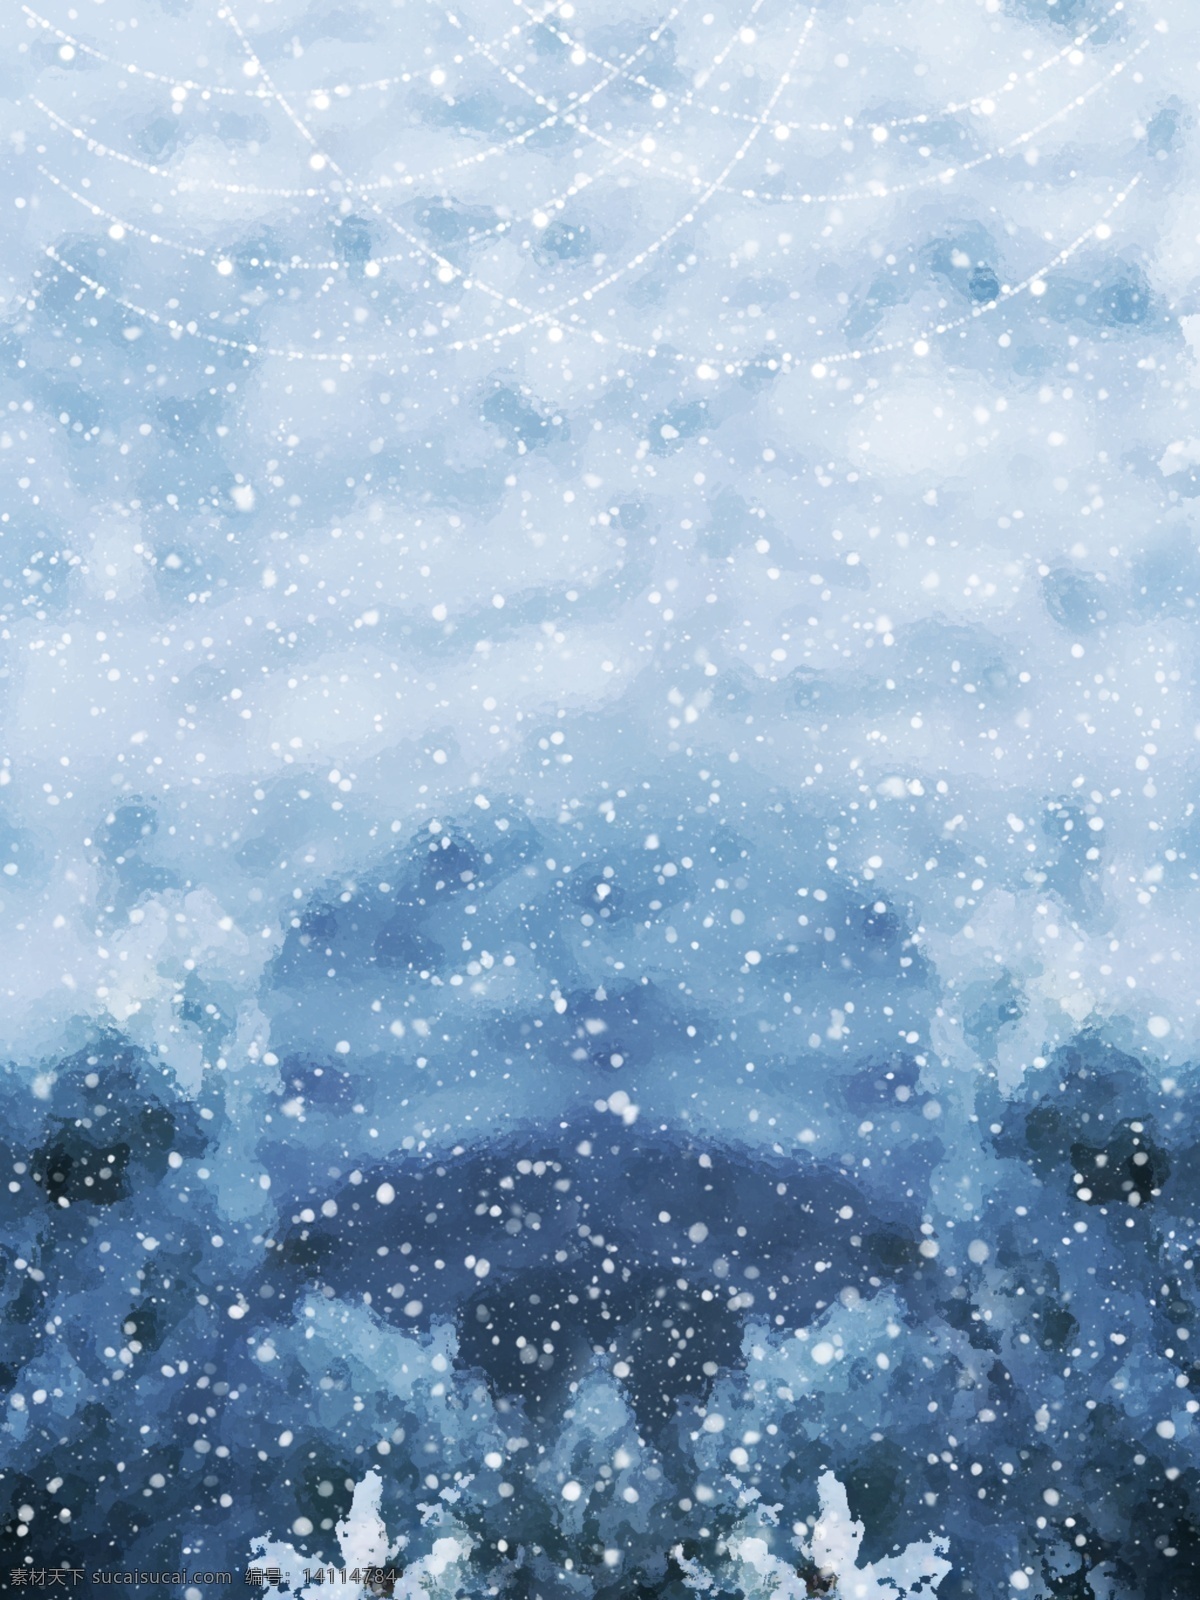 原创 小 清新 冷 色系 雪花 背景 冬天背景 雪花背景 冬季背景 下雪背景 蓝色背景 冬至背景 冷色背景